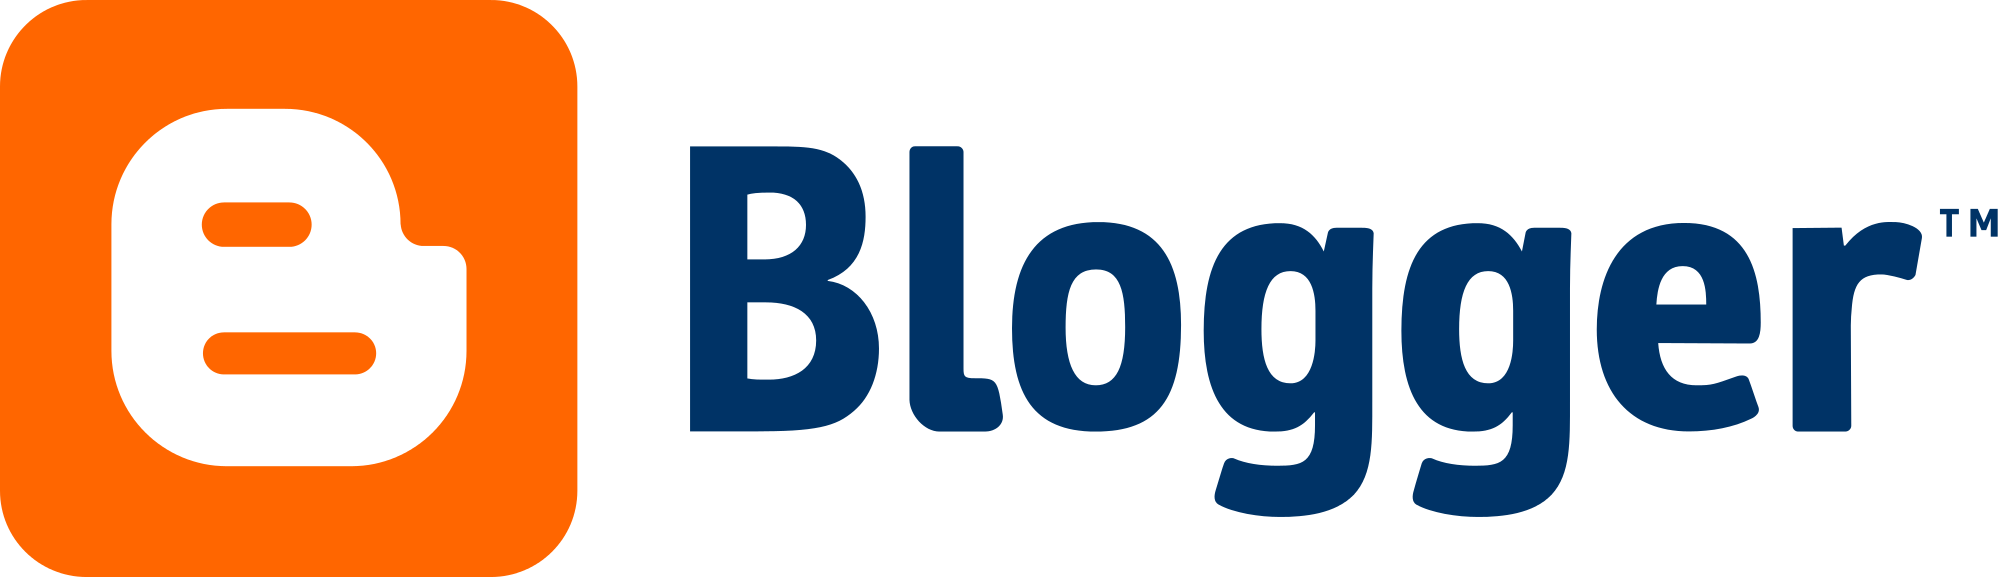 2000px-Blogger_logo.svg.png